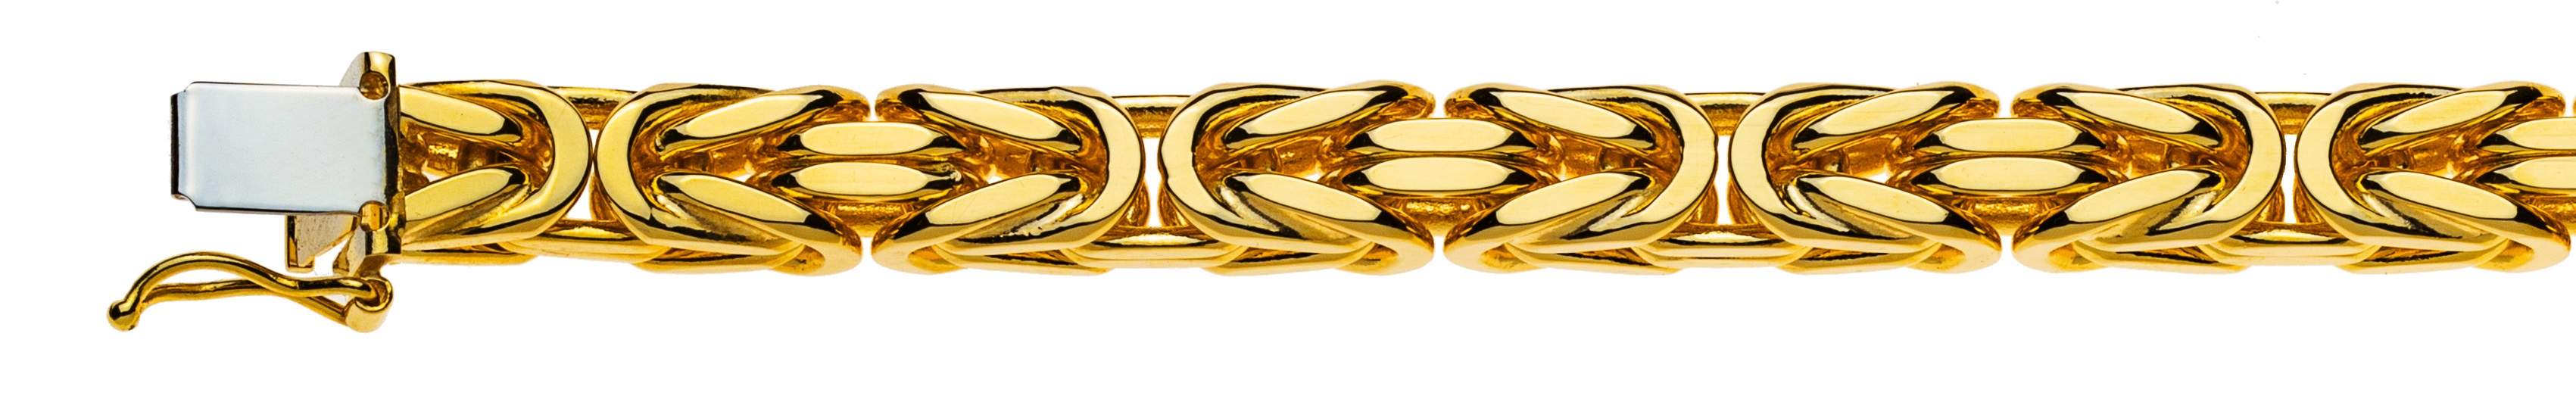 AURONOS Prestige Halskette Gelbgold 18K Königskette 60cm 6mm